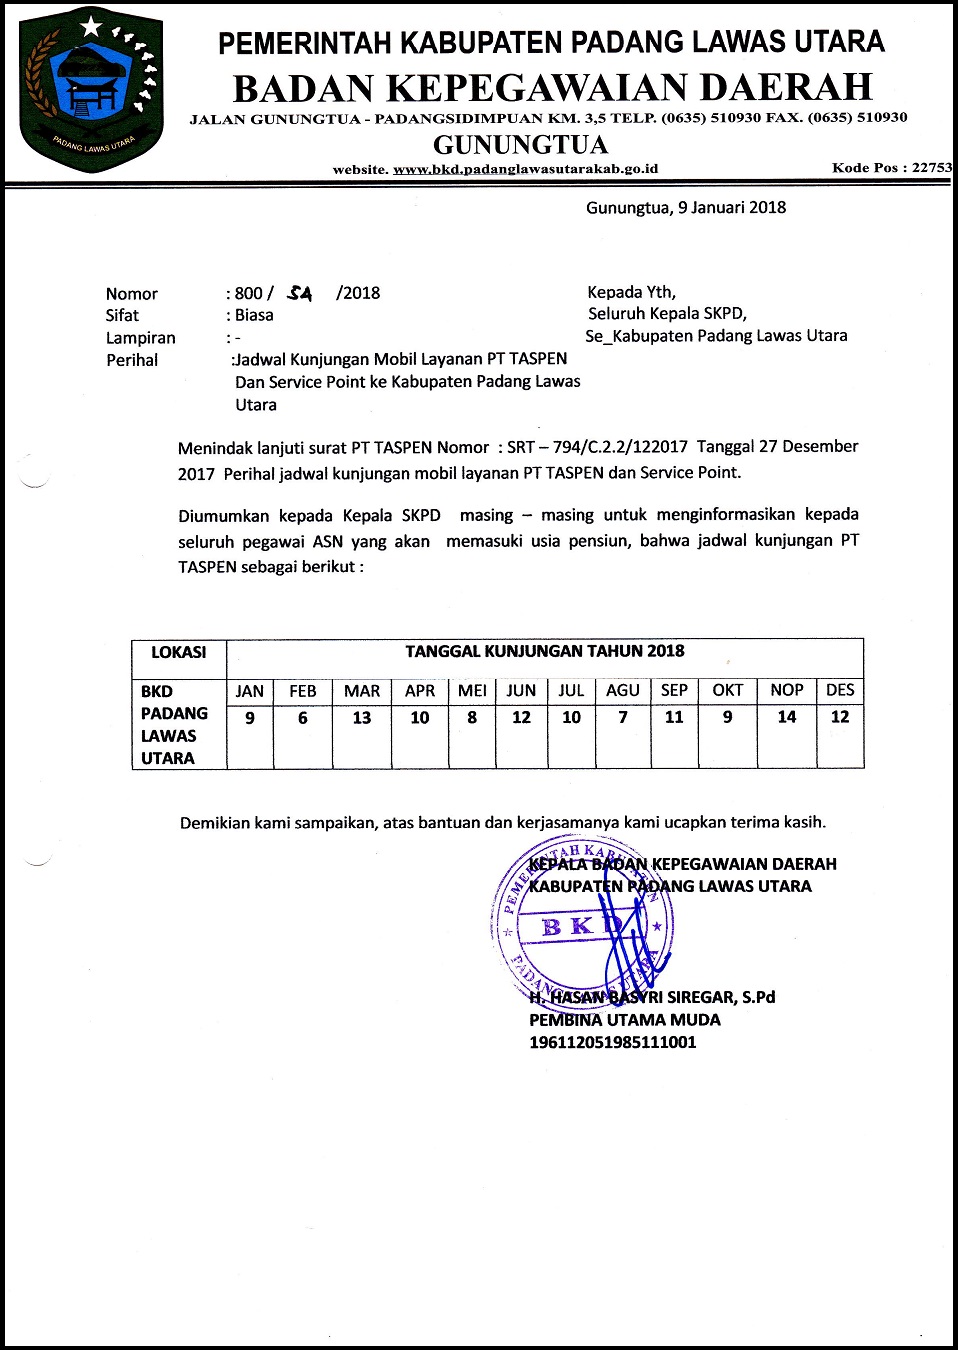 Jadwal Kunjungan Mobil Layanan PT TASPEN Dan Service Point ke Kabupaten Padang Lawas Utara 2018